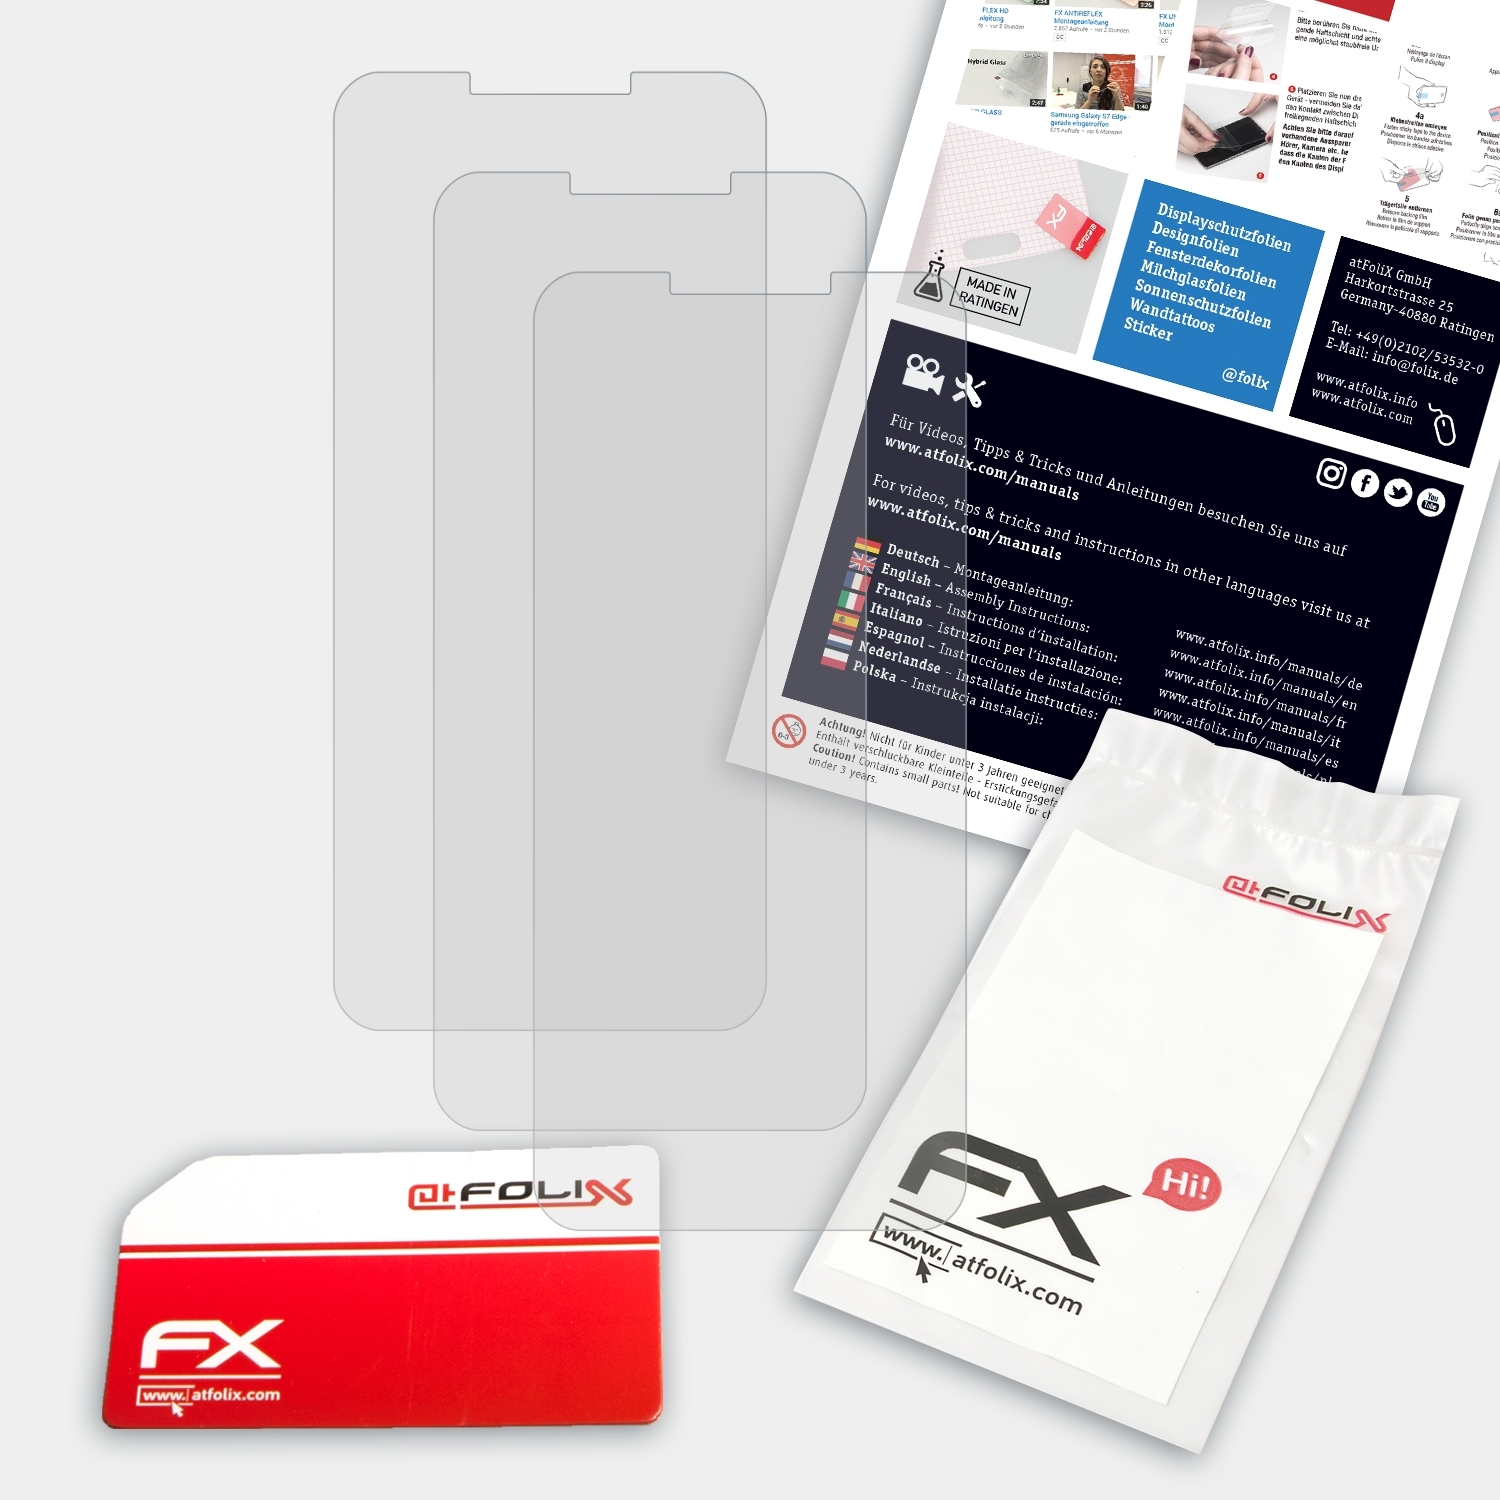 ATFOLIX 3x FX-Antireflex Displayschutz(für Lite) BL5500 Doogee